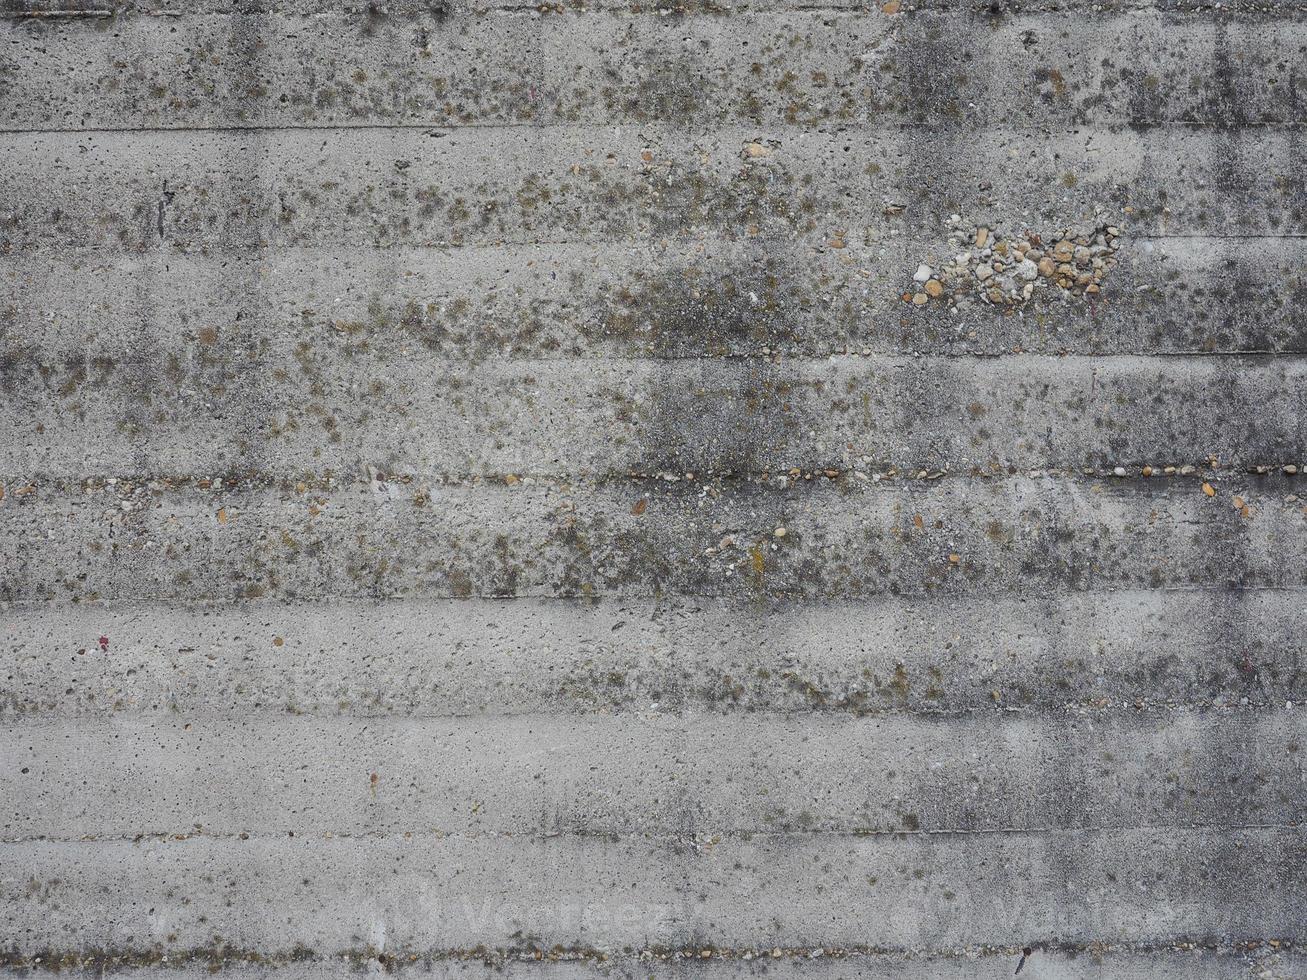 sfondo muro di cemento foto